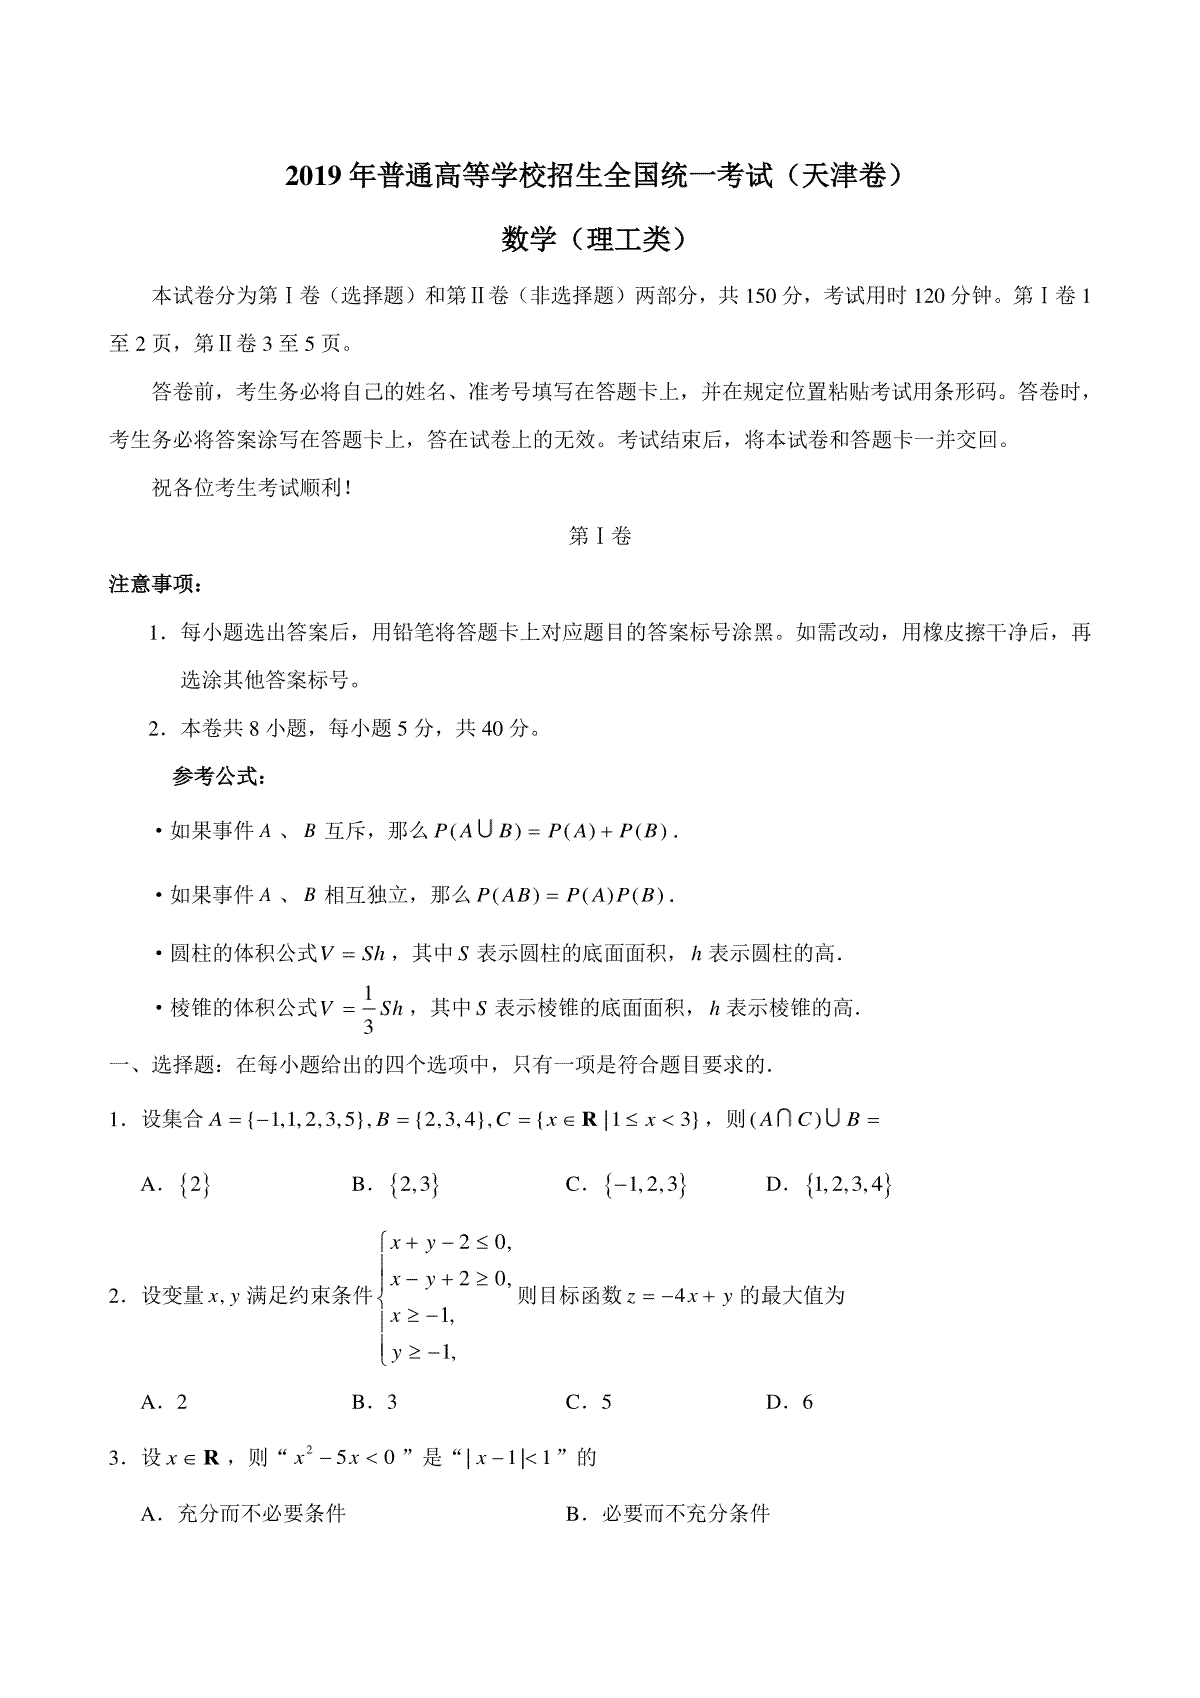 2019年高考理科数学试题(天津卷)及参考答案